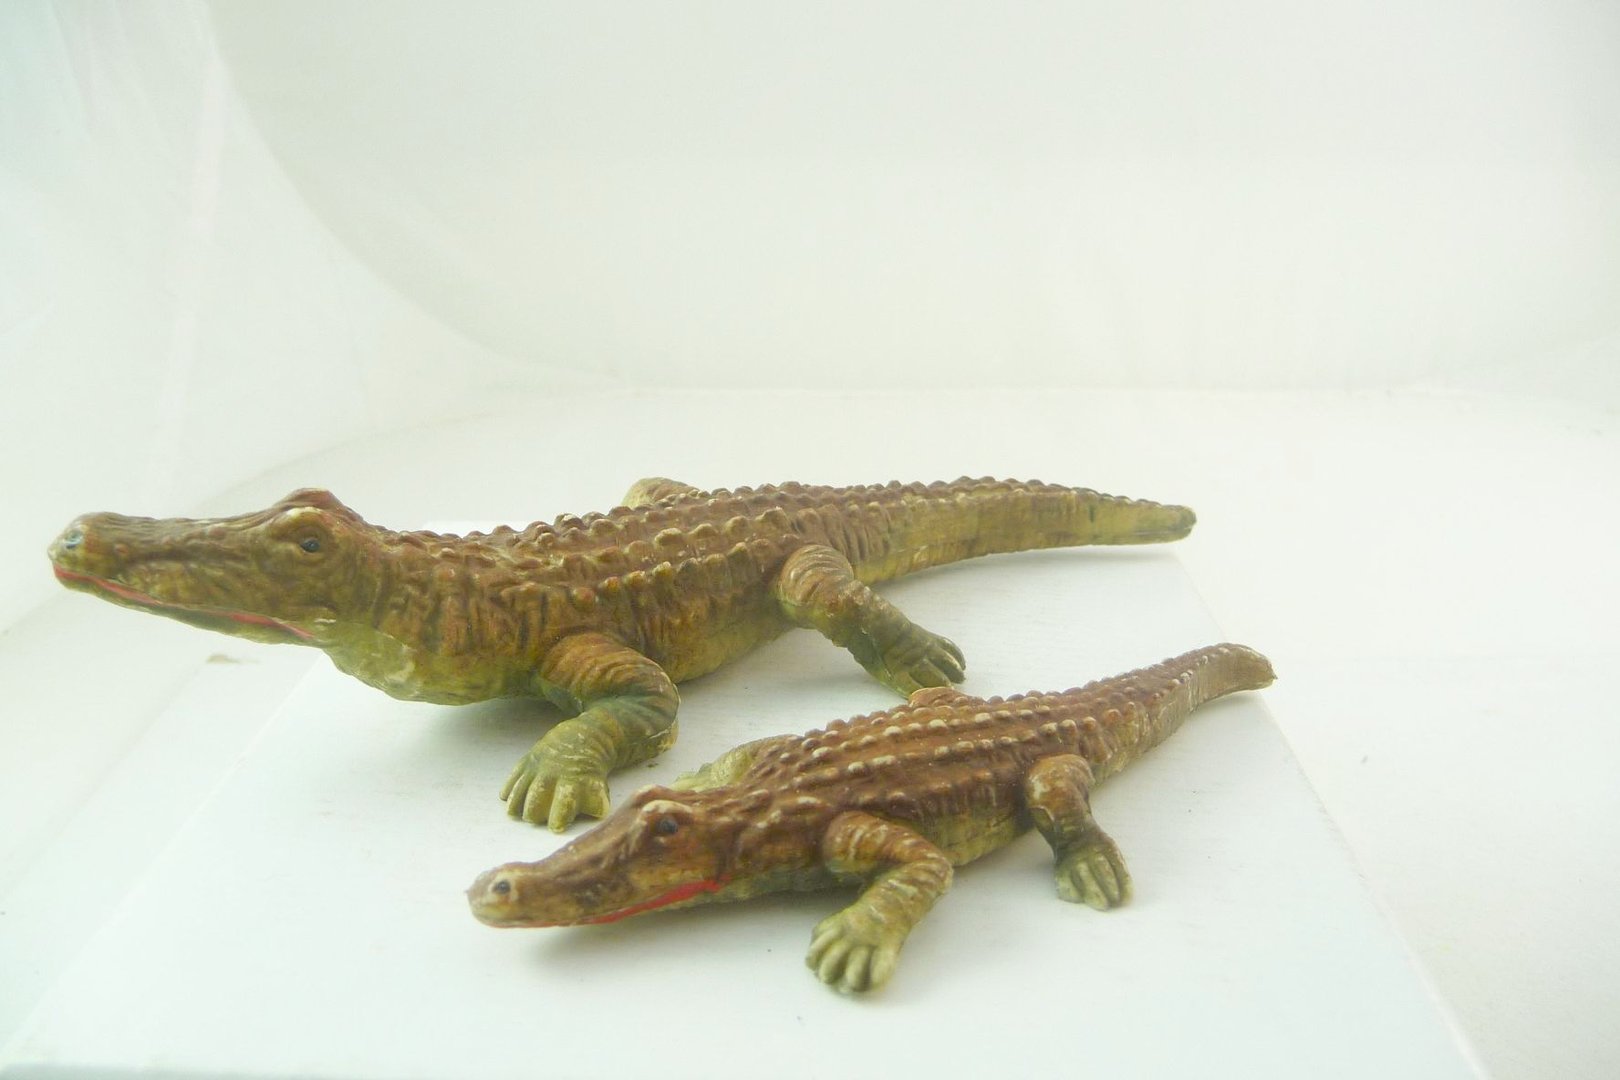 plastic crocodile